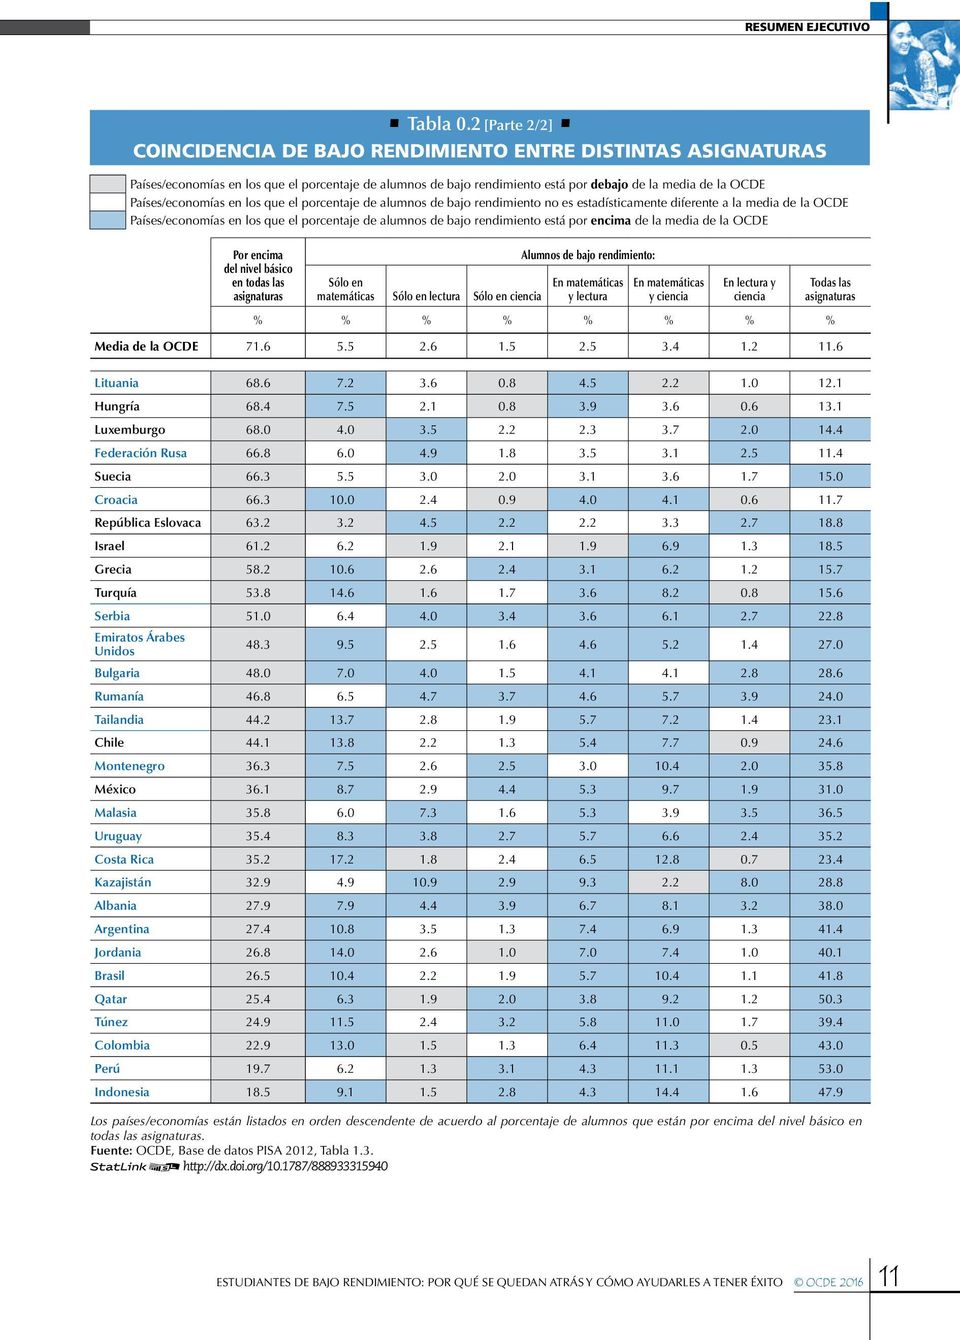 Países/economías en los que el porcentaje de alumnos de bajo rendimiento no es estadísticamente diferente a la media de la OCDE Países/economías en los que el porcentaje de alumnos de bajo